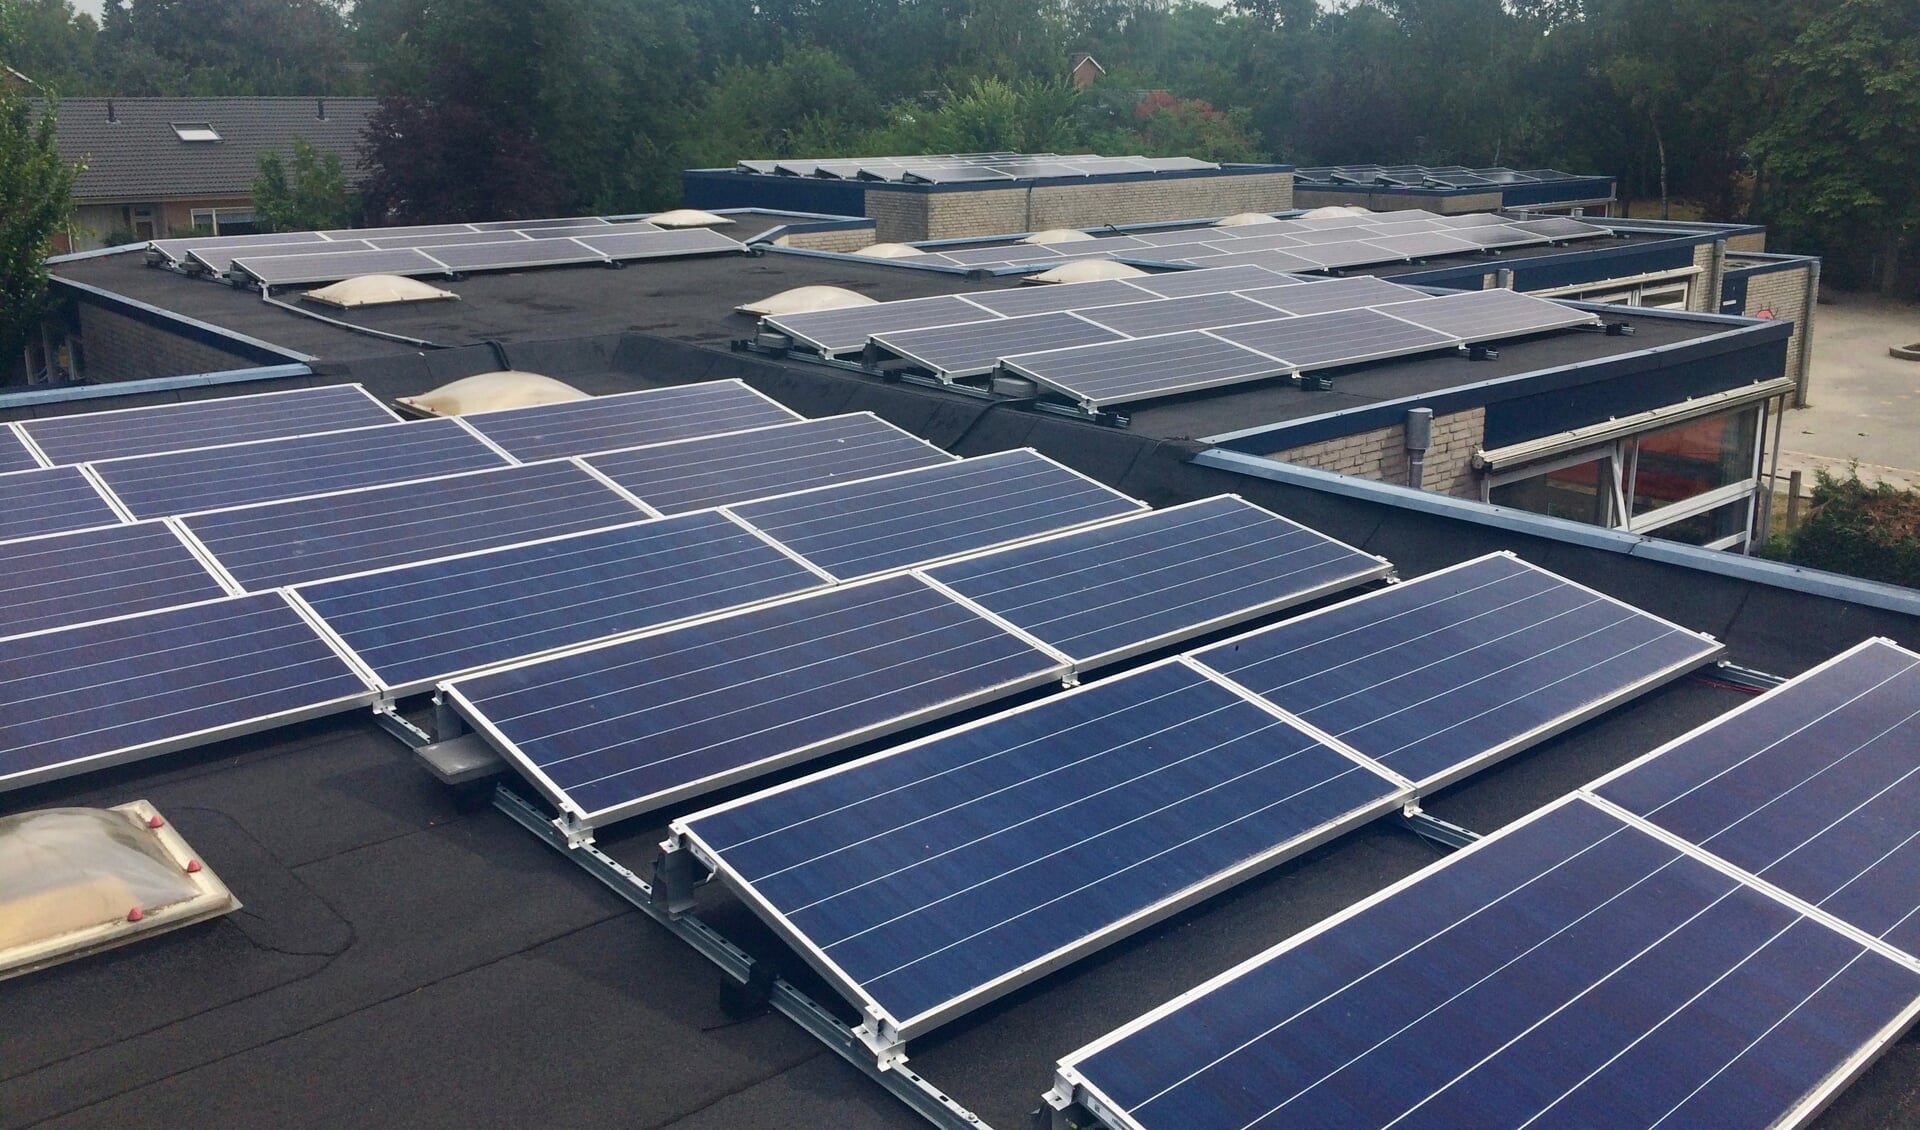 Met deze zonnepanelen wordt er duurzaam en lokaal energie opgewekt